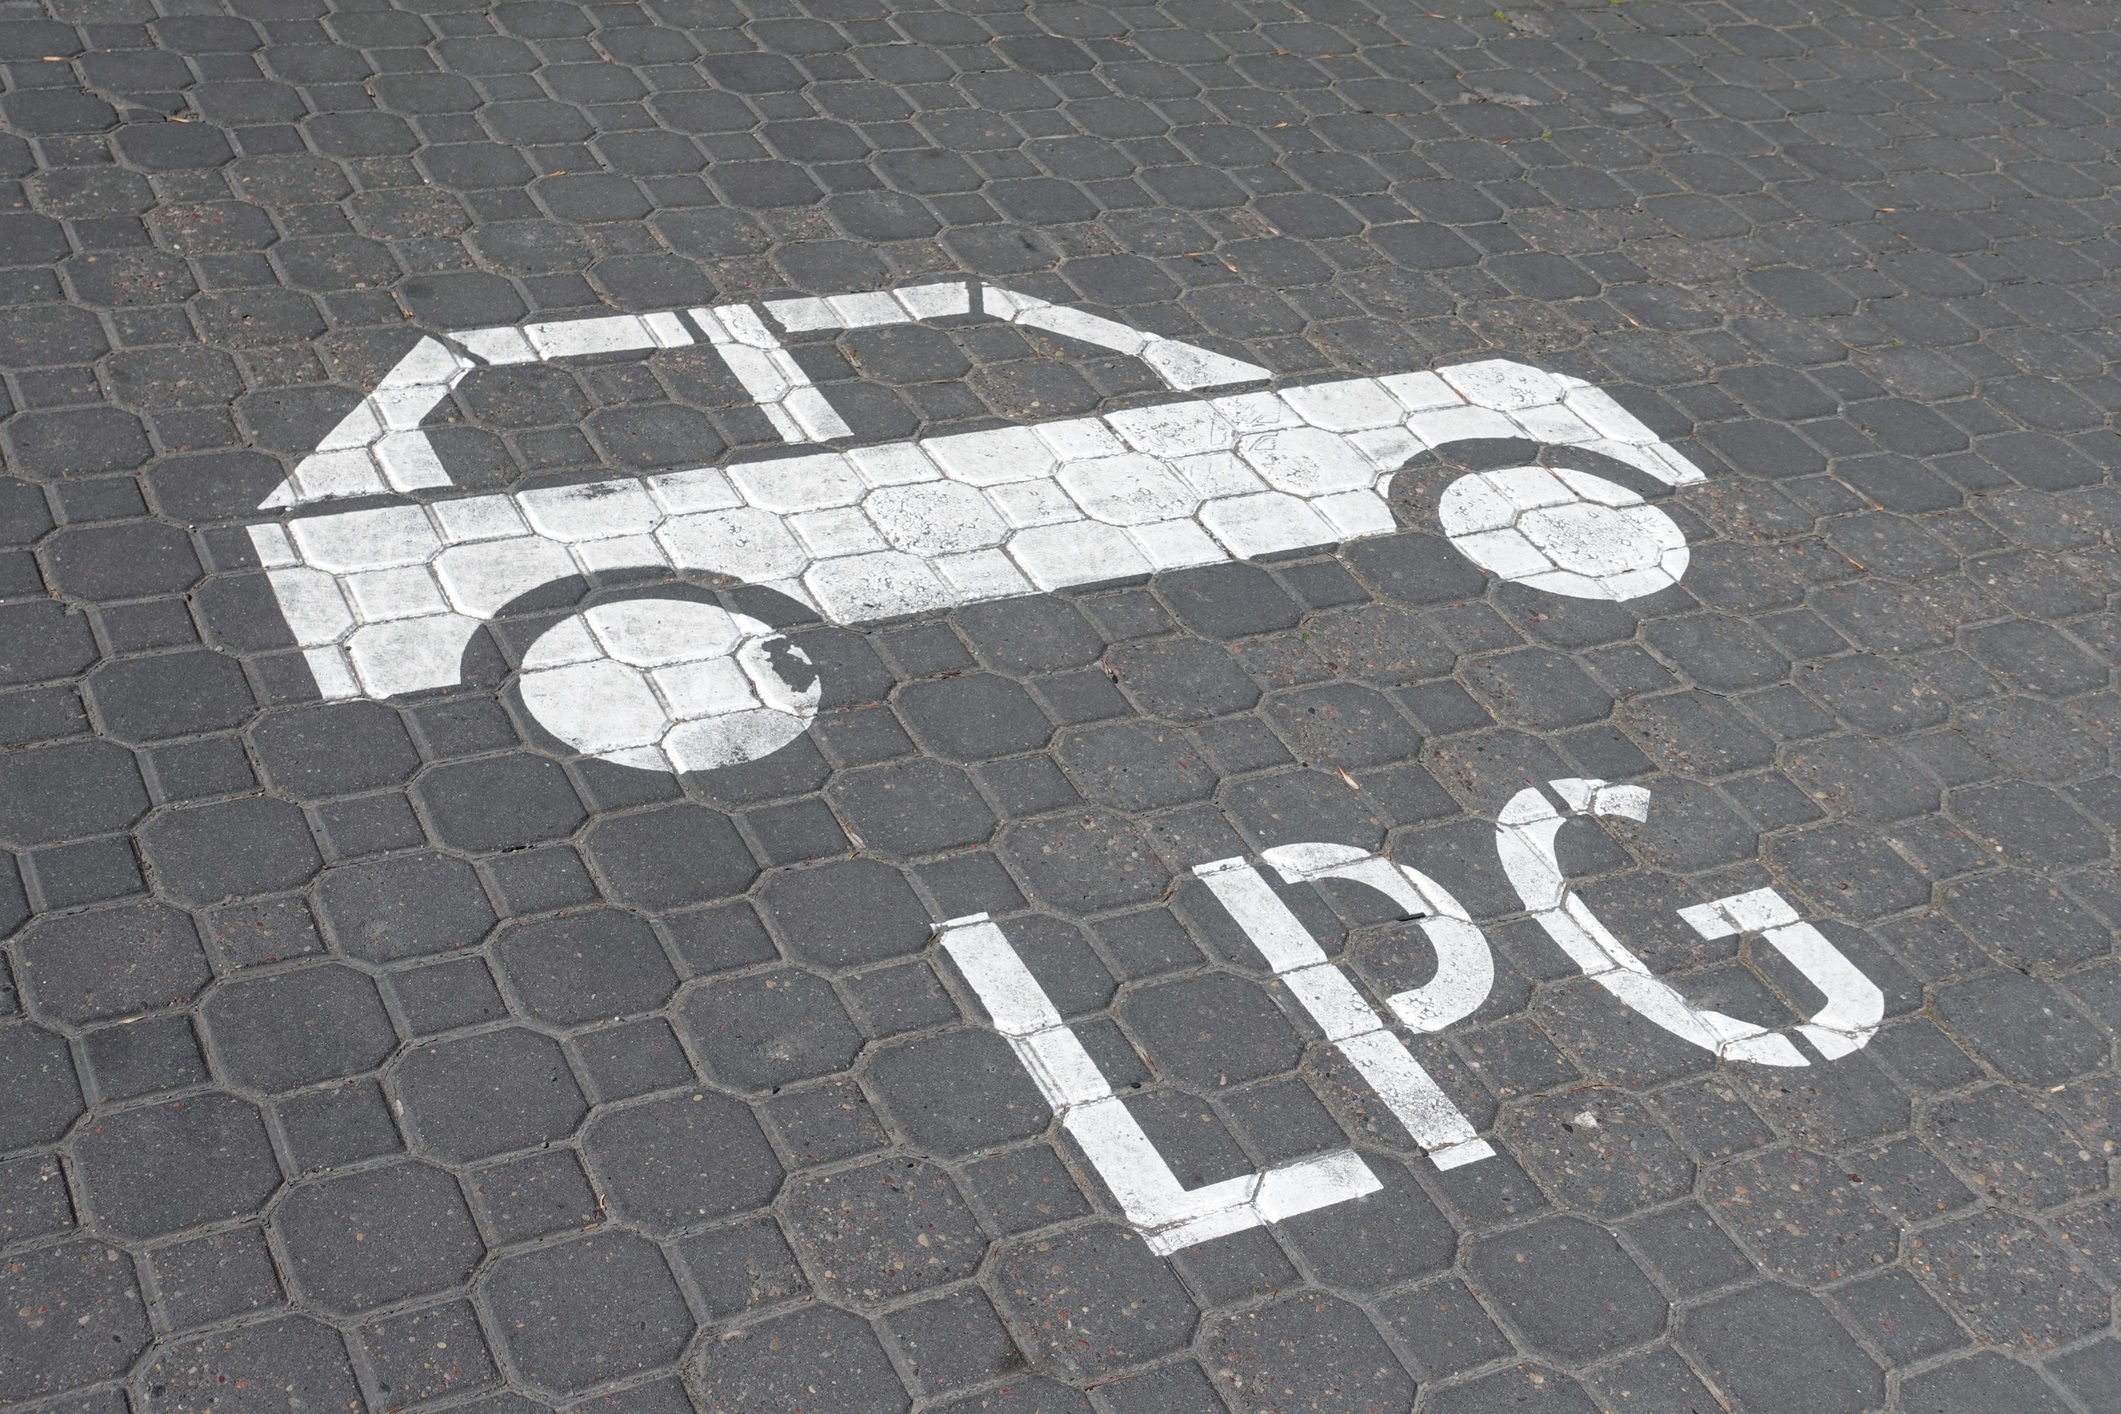 sylwetka samochodu i napis LPG namalowane na ulicy